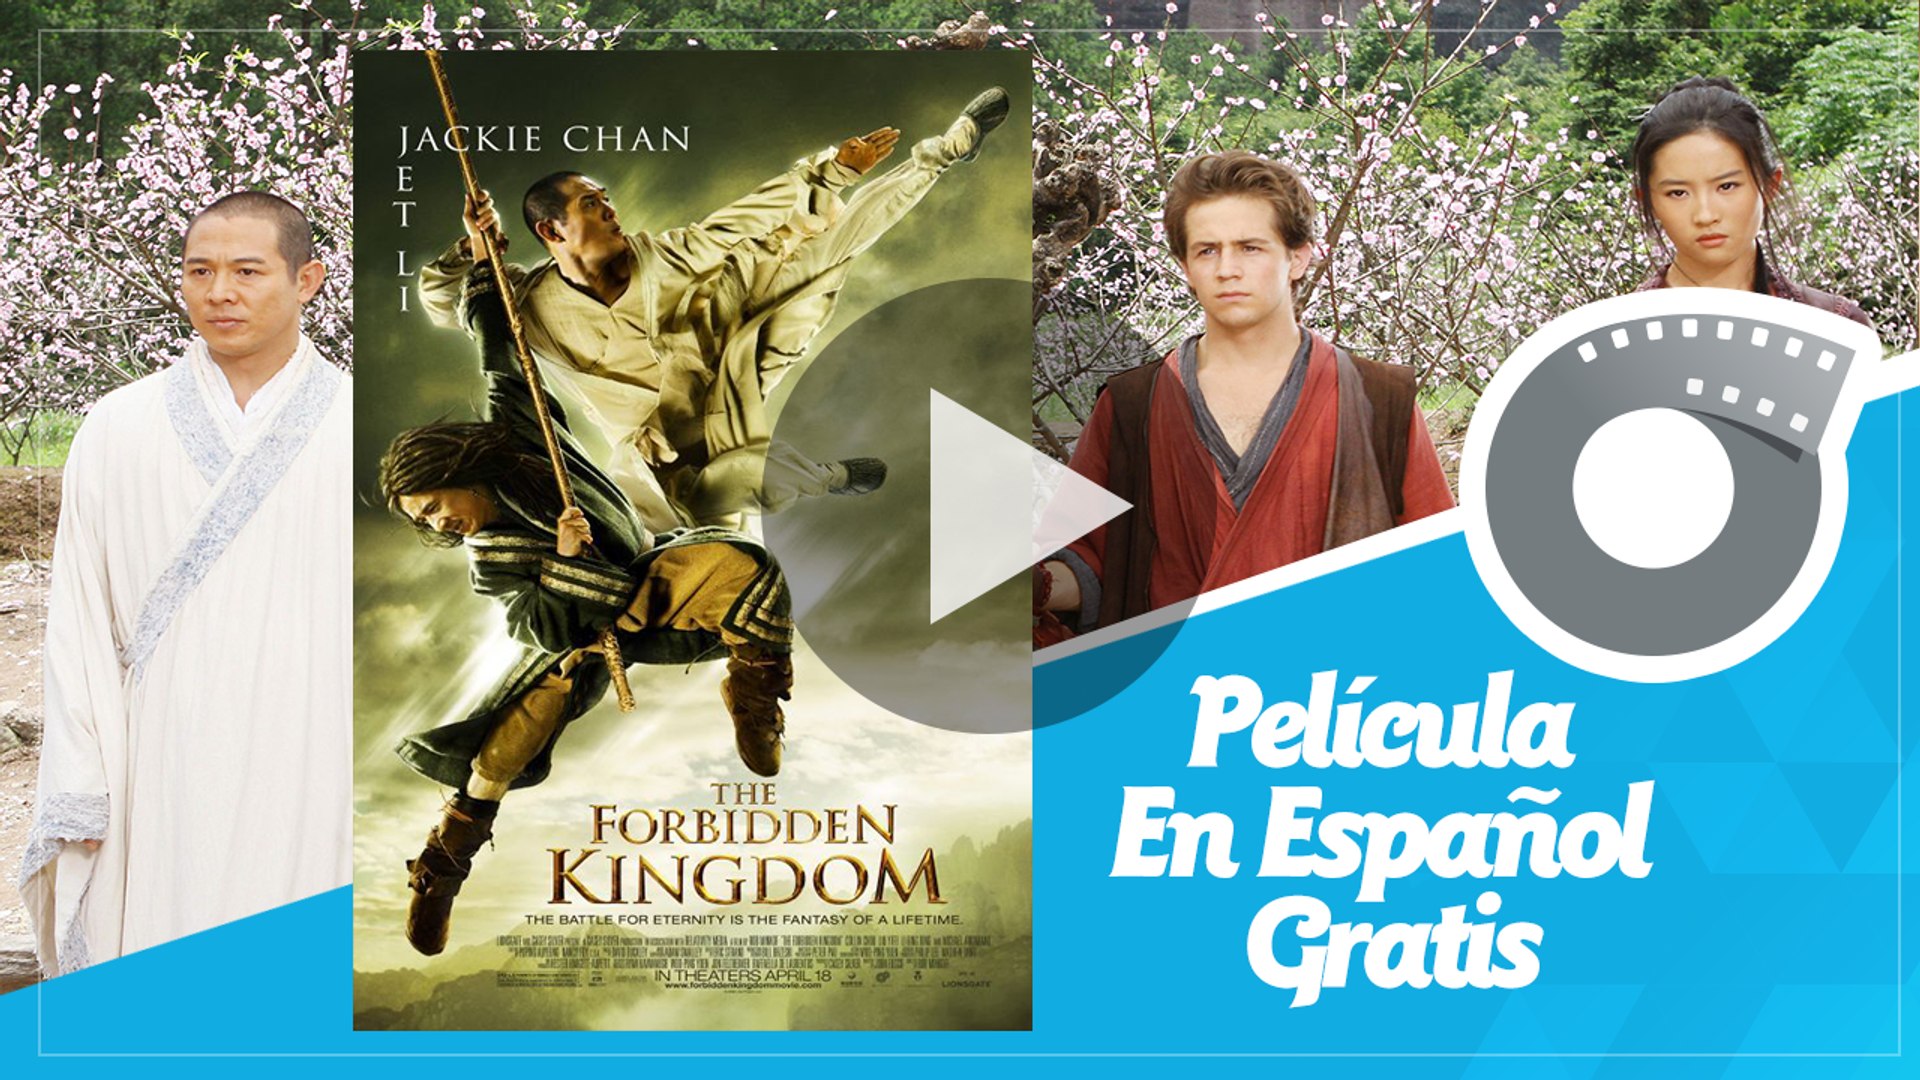 Forbidden Kingdom - Jackie Chan - Película En Español Gratis - Vídeo  Dailymotion